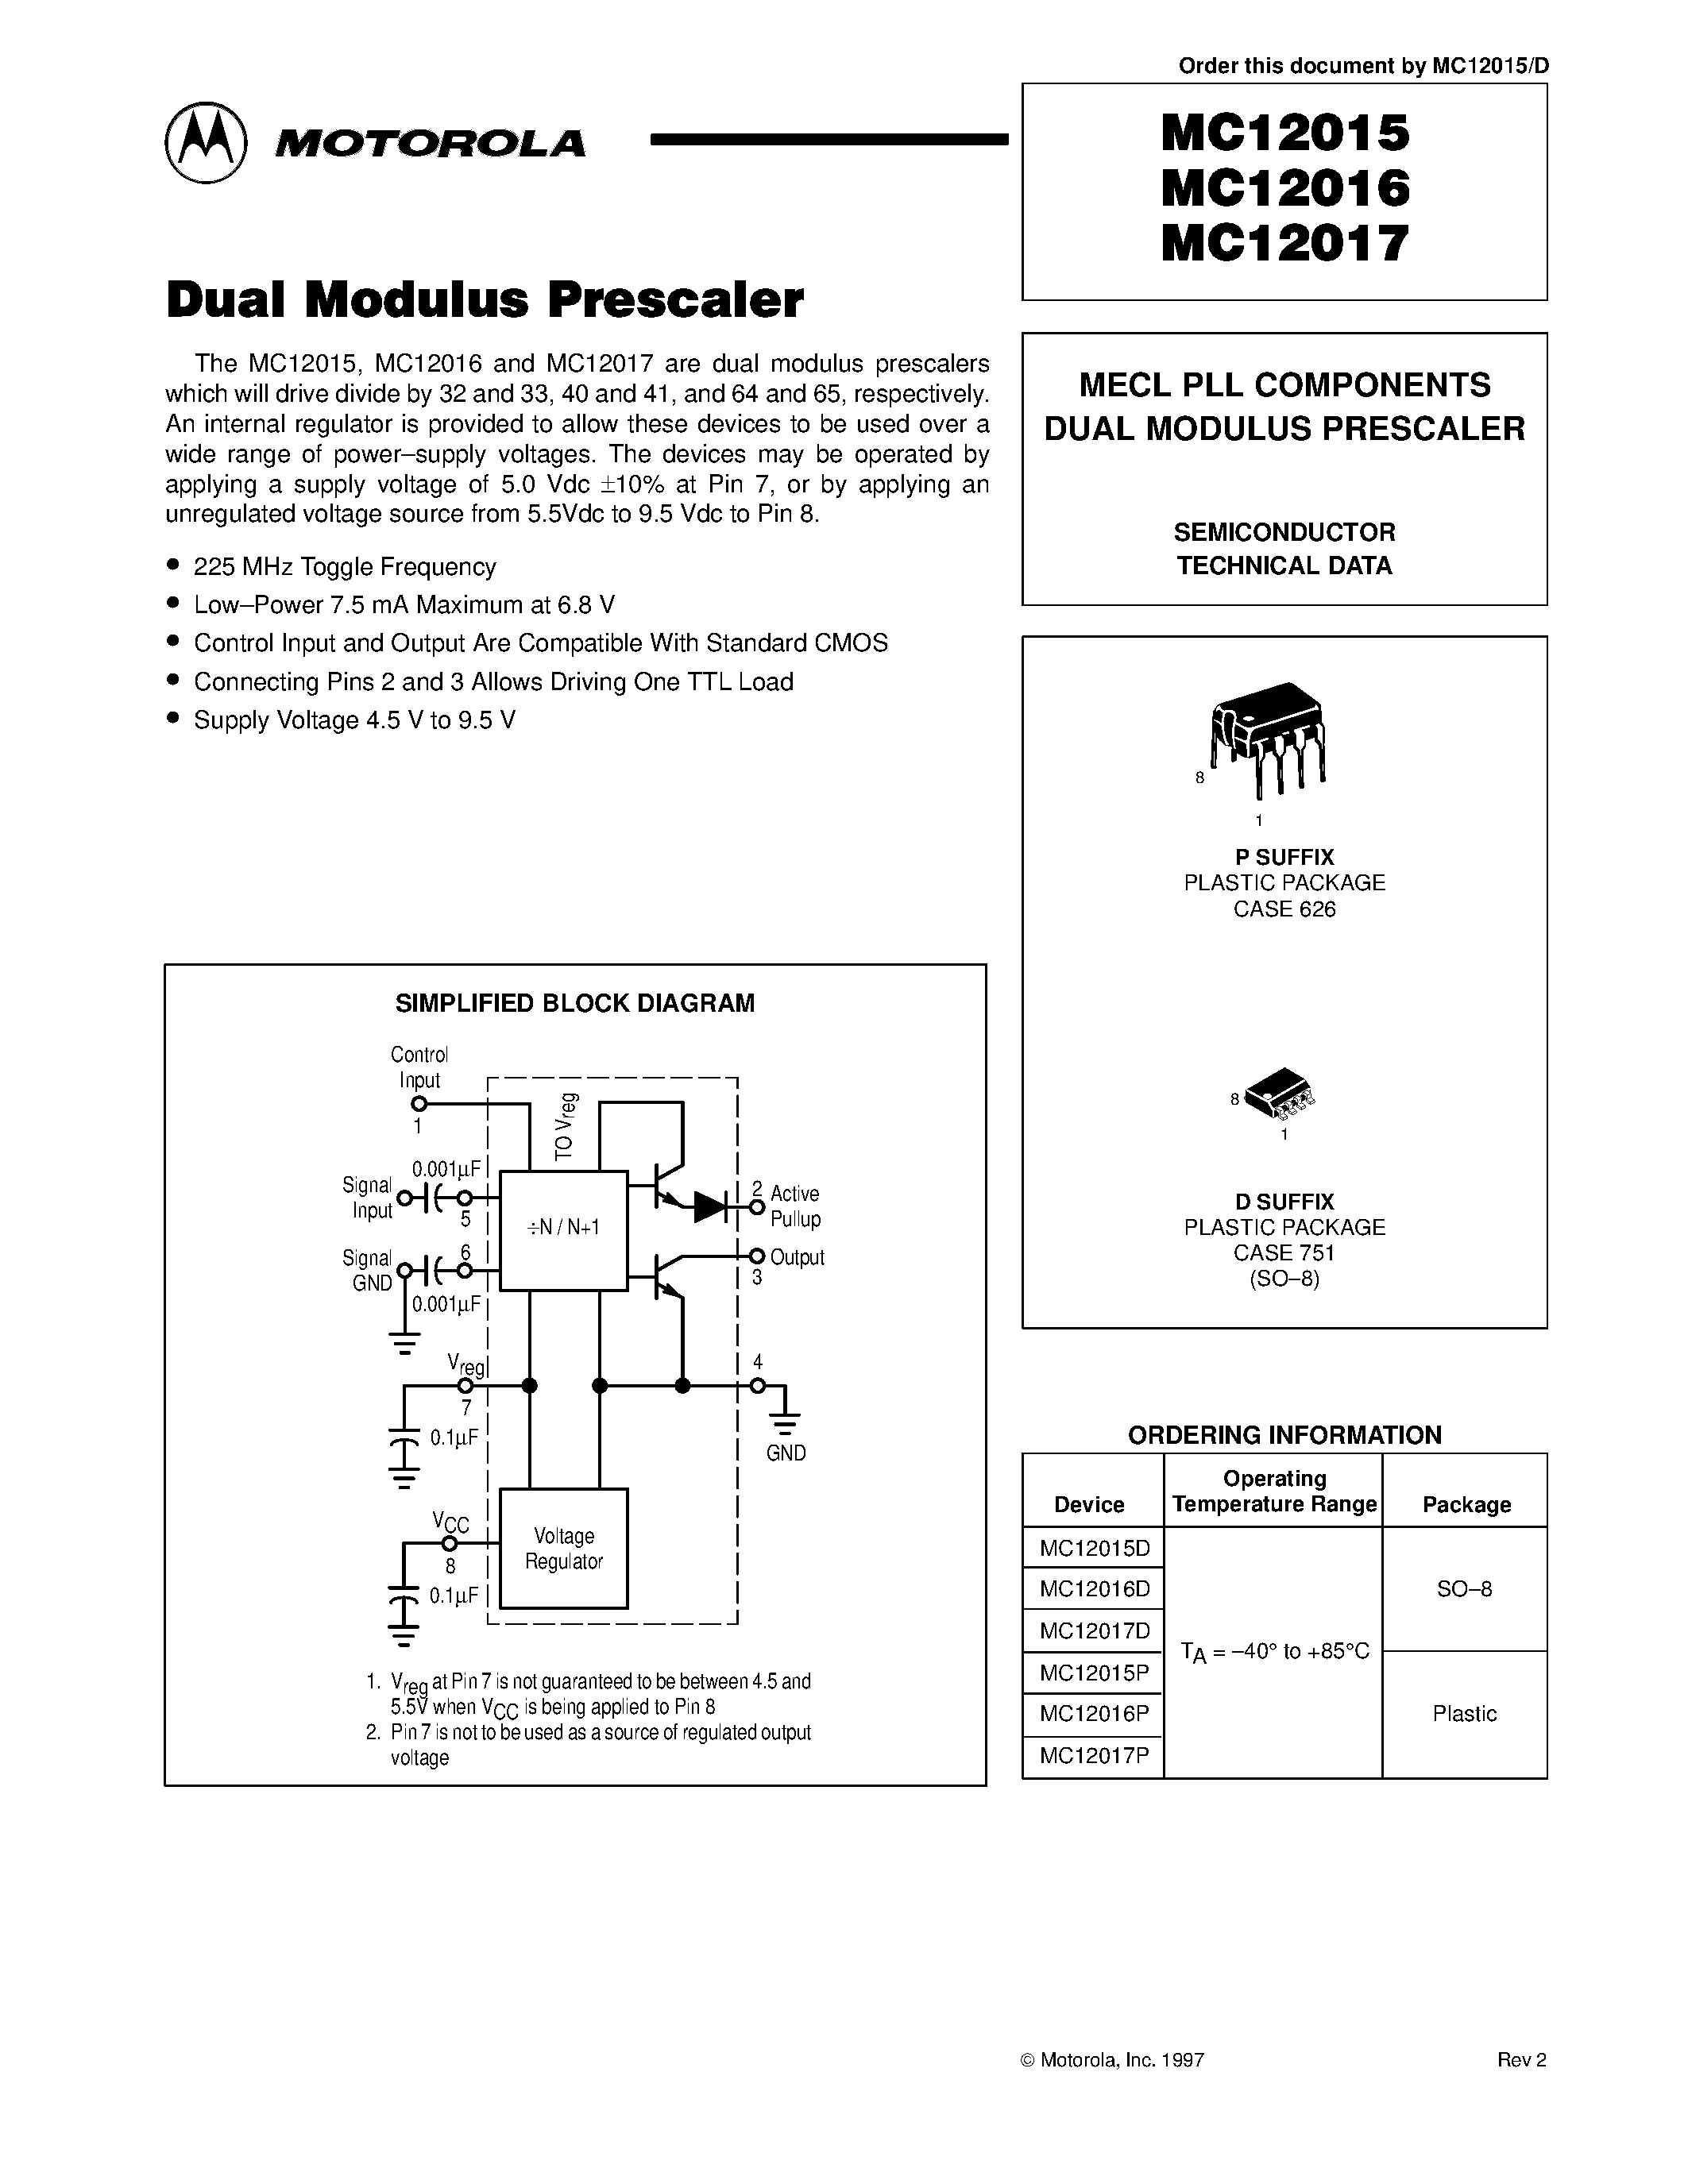 Datasheet MC12016D - MECL PLL COMPONENTS DUAL MODULUS PRESCALER page 1